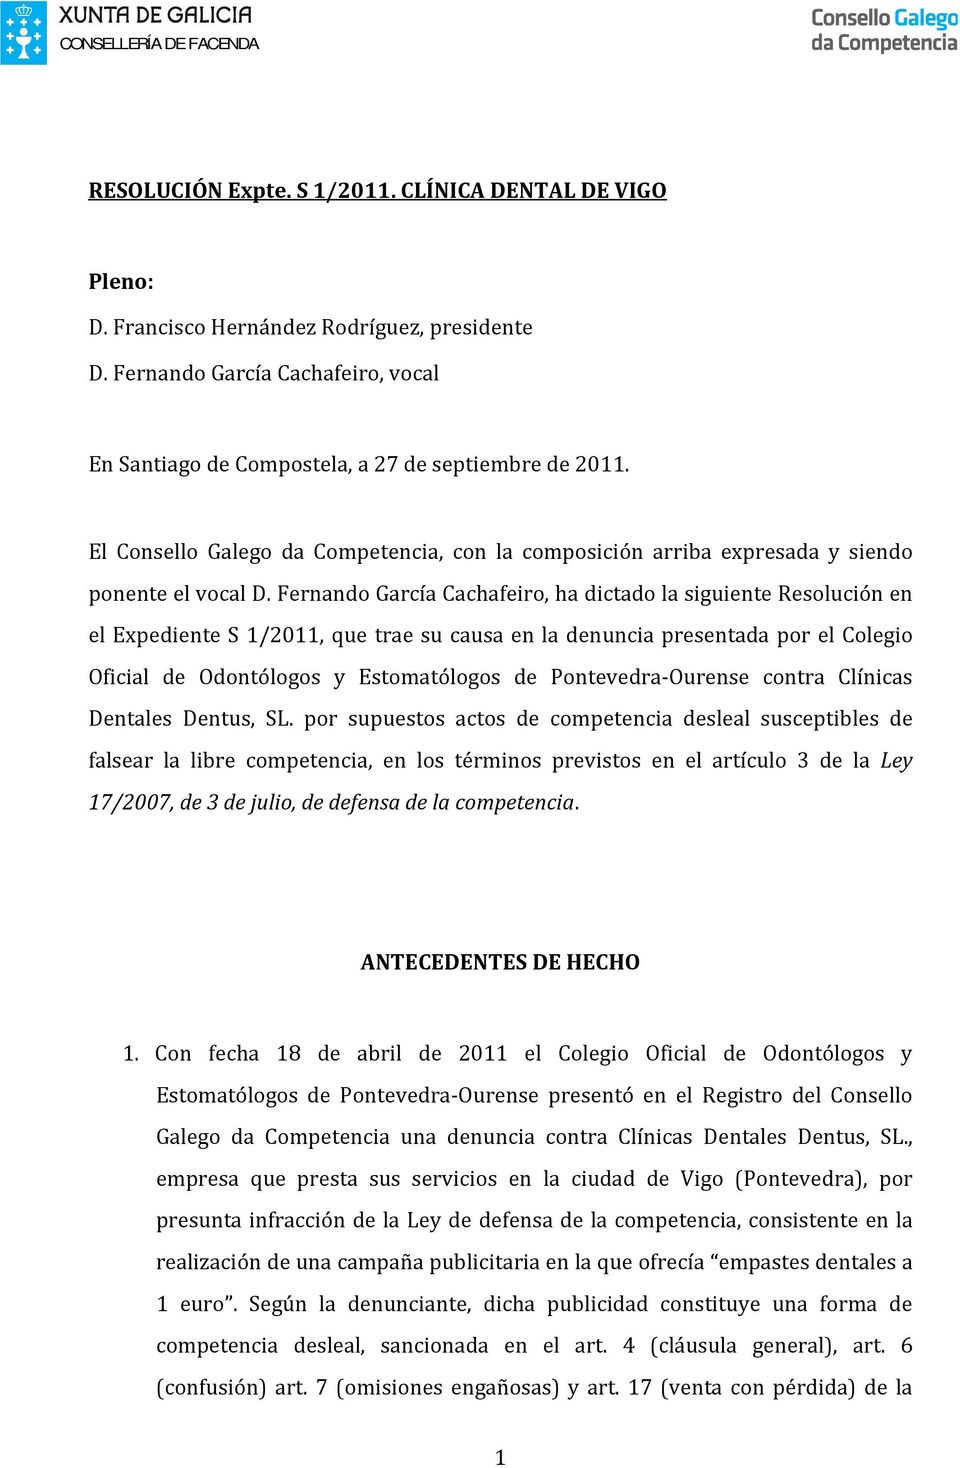 Fernando García Cachafeiro, ha dictado la siguiente Resolución en el Expediente S 1/2011, que trae su causa en la denuncia presentada por el Colegio Oficial de Odontólogos y Estomatólogos de